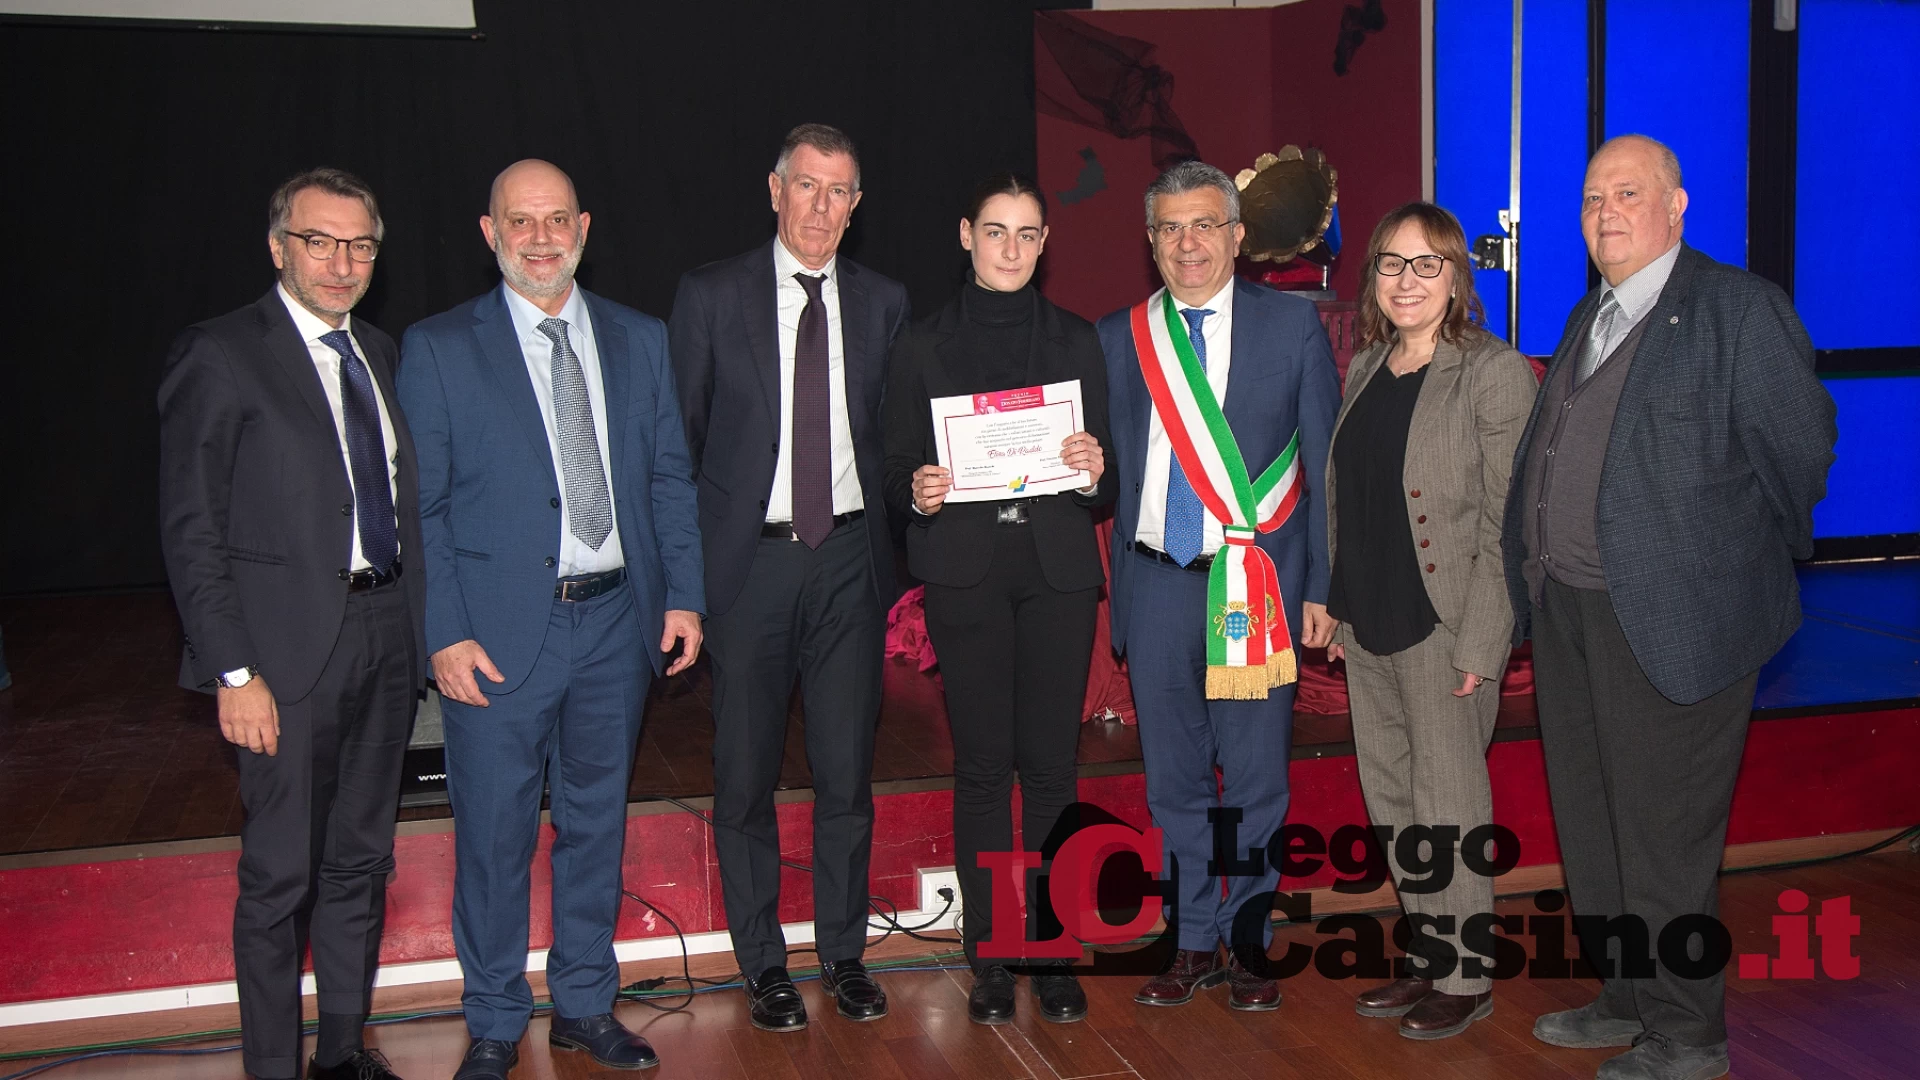 Un grande successo la Cerimonia della consegna dei diplomi all'I.I.S. Medaglia d'Oro "Città di Cassino"